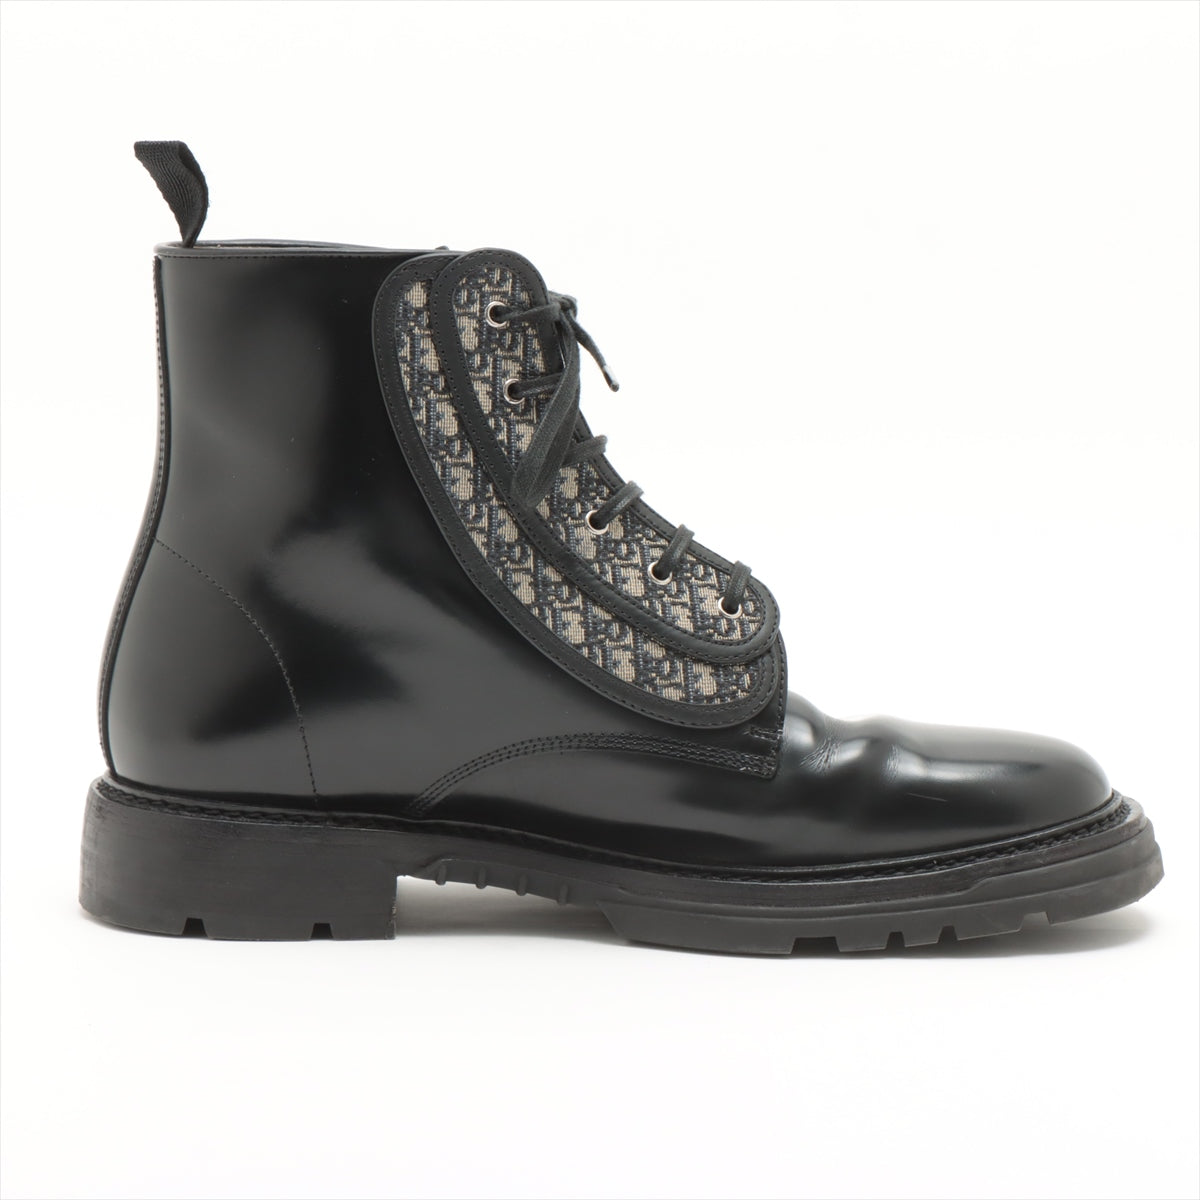 DIOR HOMME Oblique Canvas & leather Boots 42 Men's Black EXPLORER CL0321